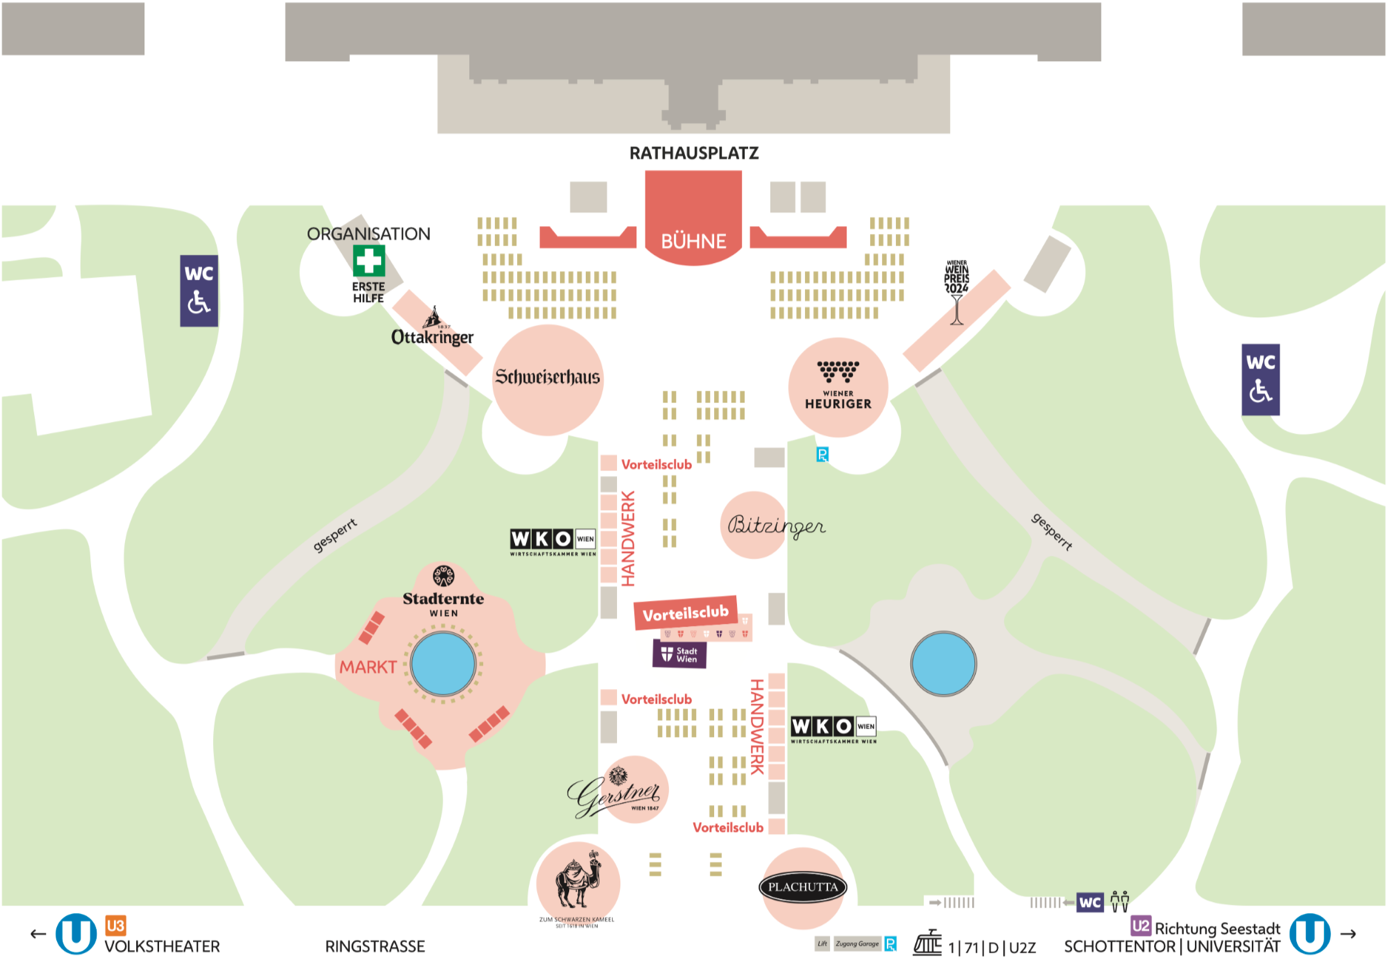 Plan des Wiener Rathausplatzes mit den Standorten des #wienliebe-Festivals